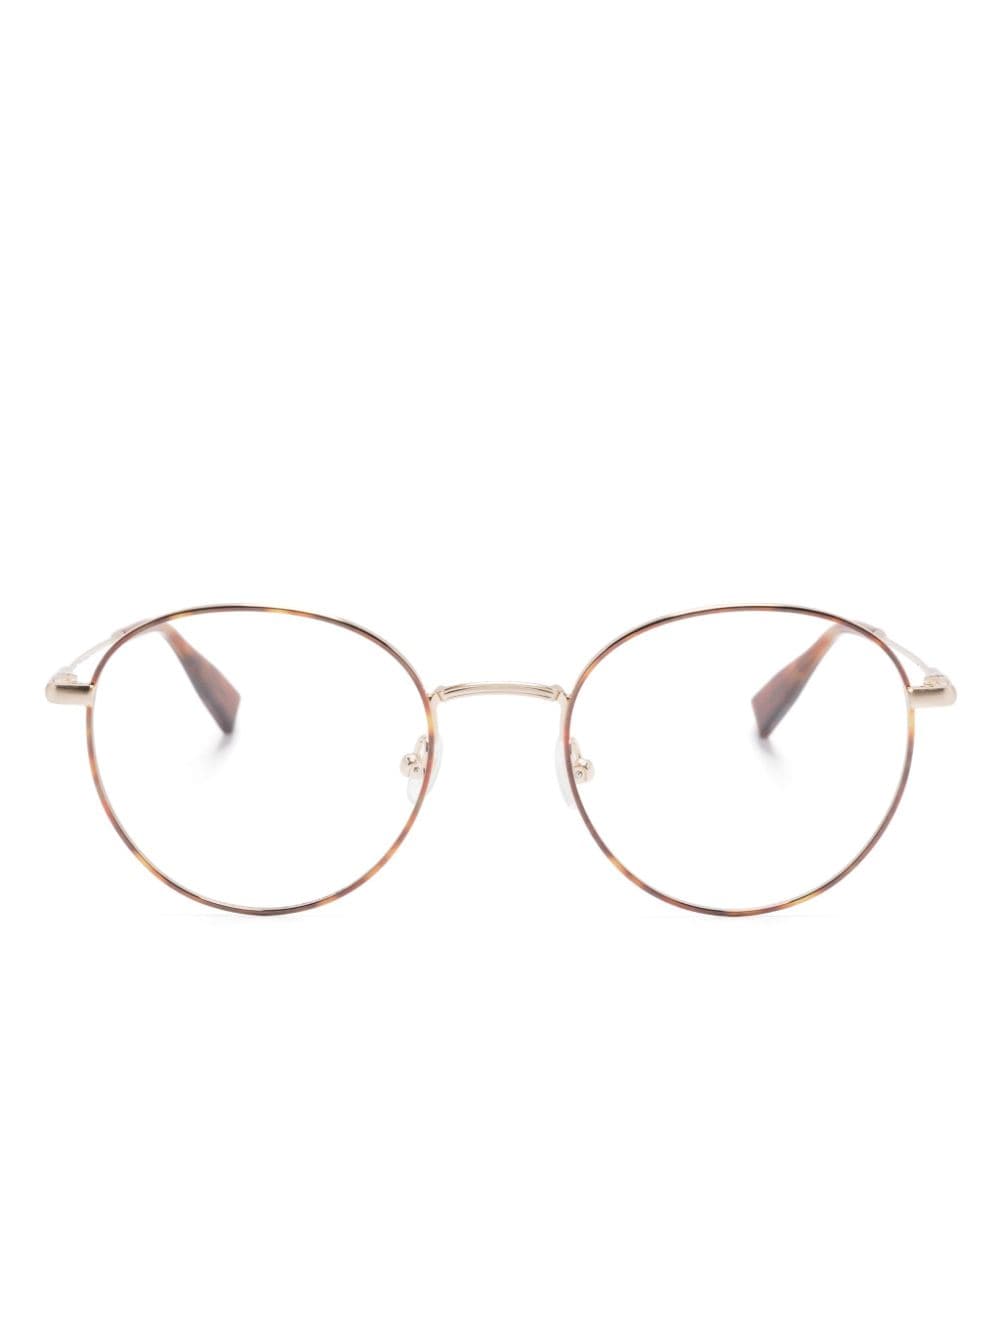 GIGI STUDIOS pantos-frame glasses - Gold von GIGI STUDIOS